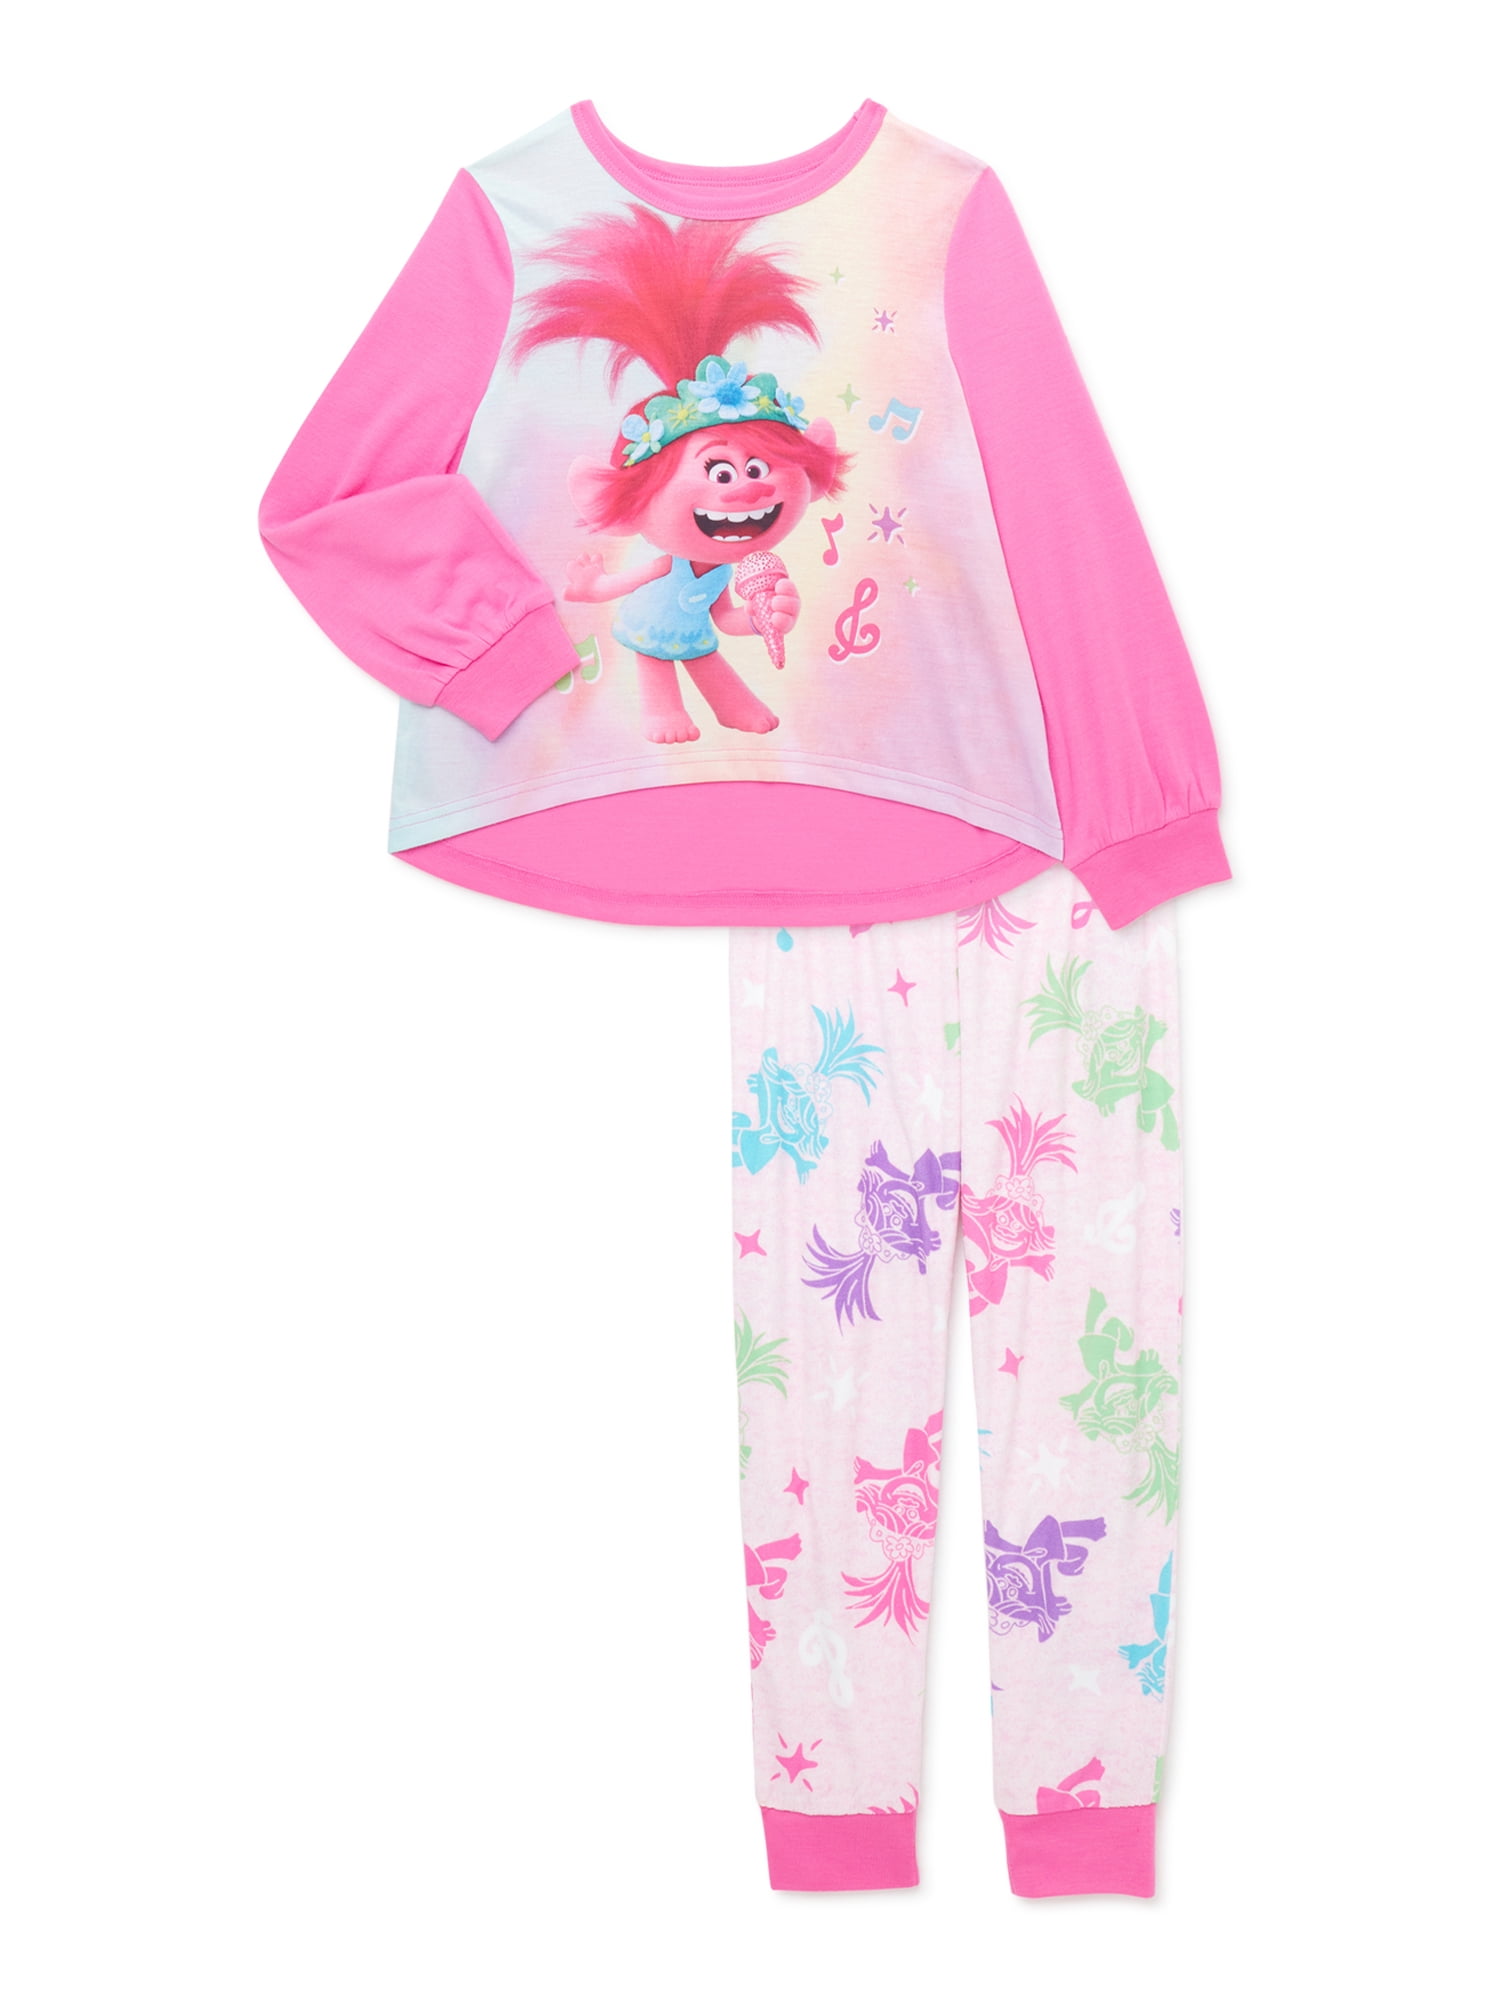 Girls Fleece Character Sleep Suit Pyjamas Pjs Size Trolls Sizes 4 to 10 years 